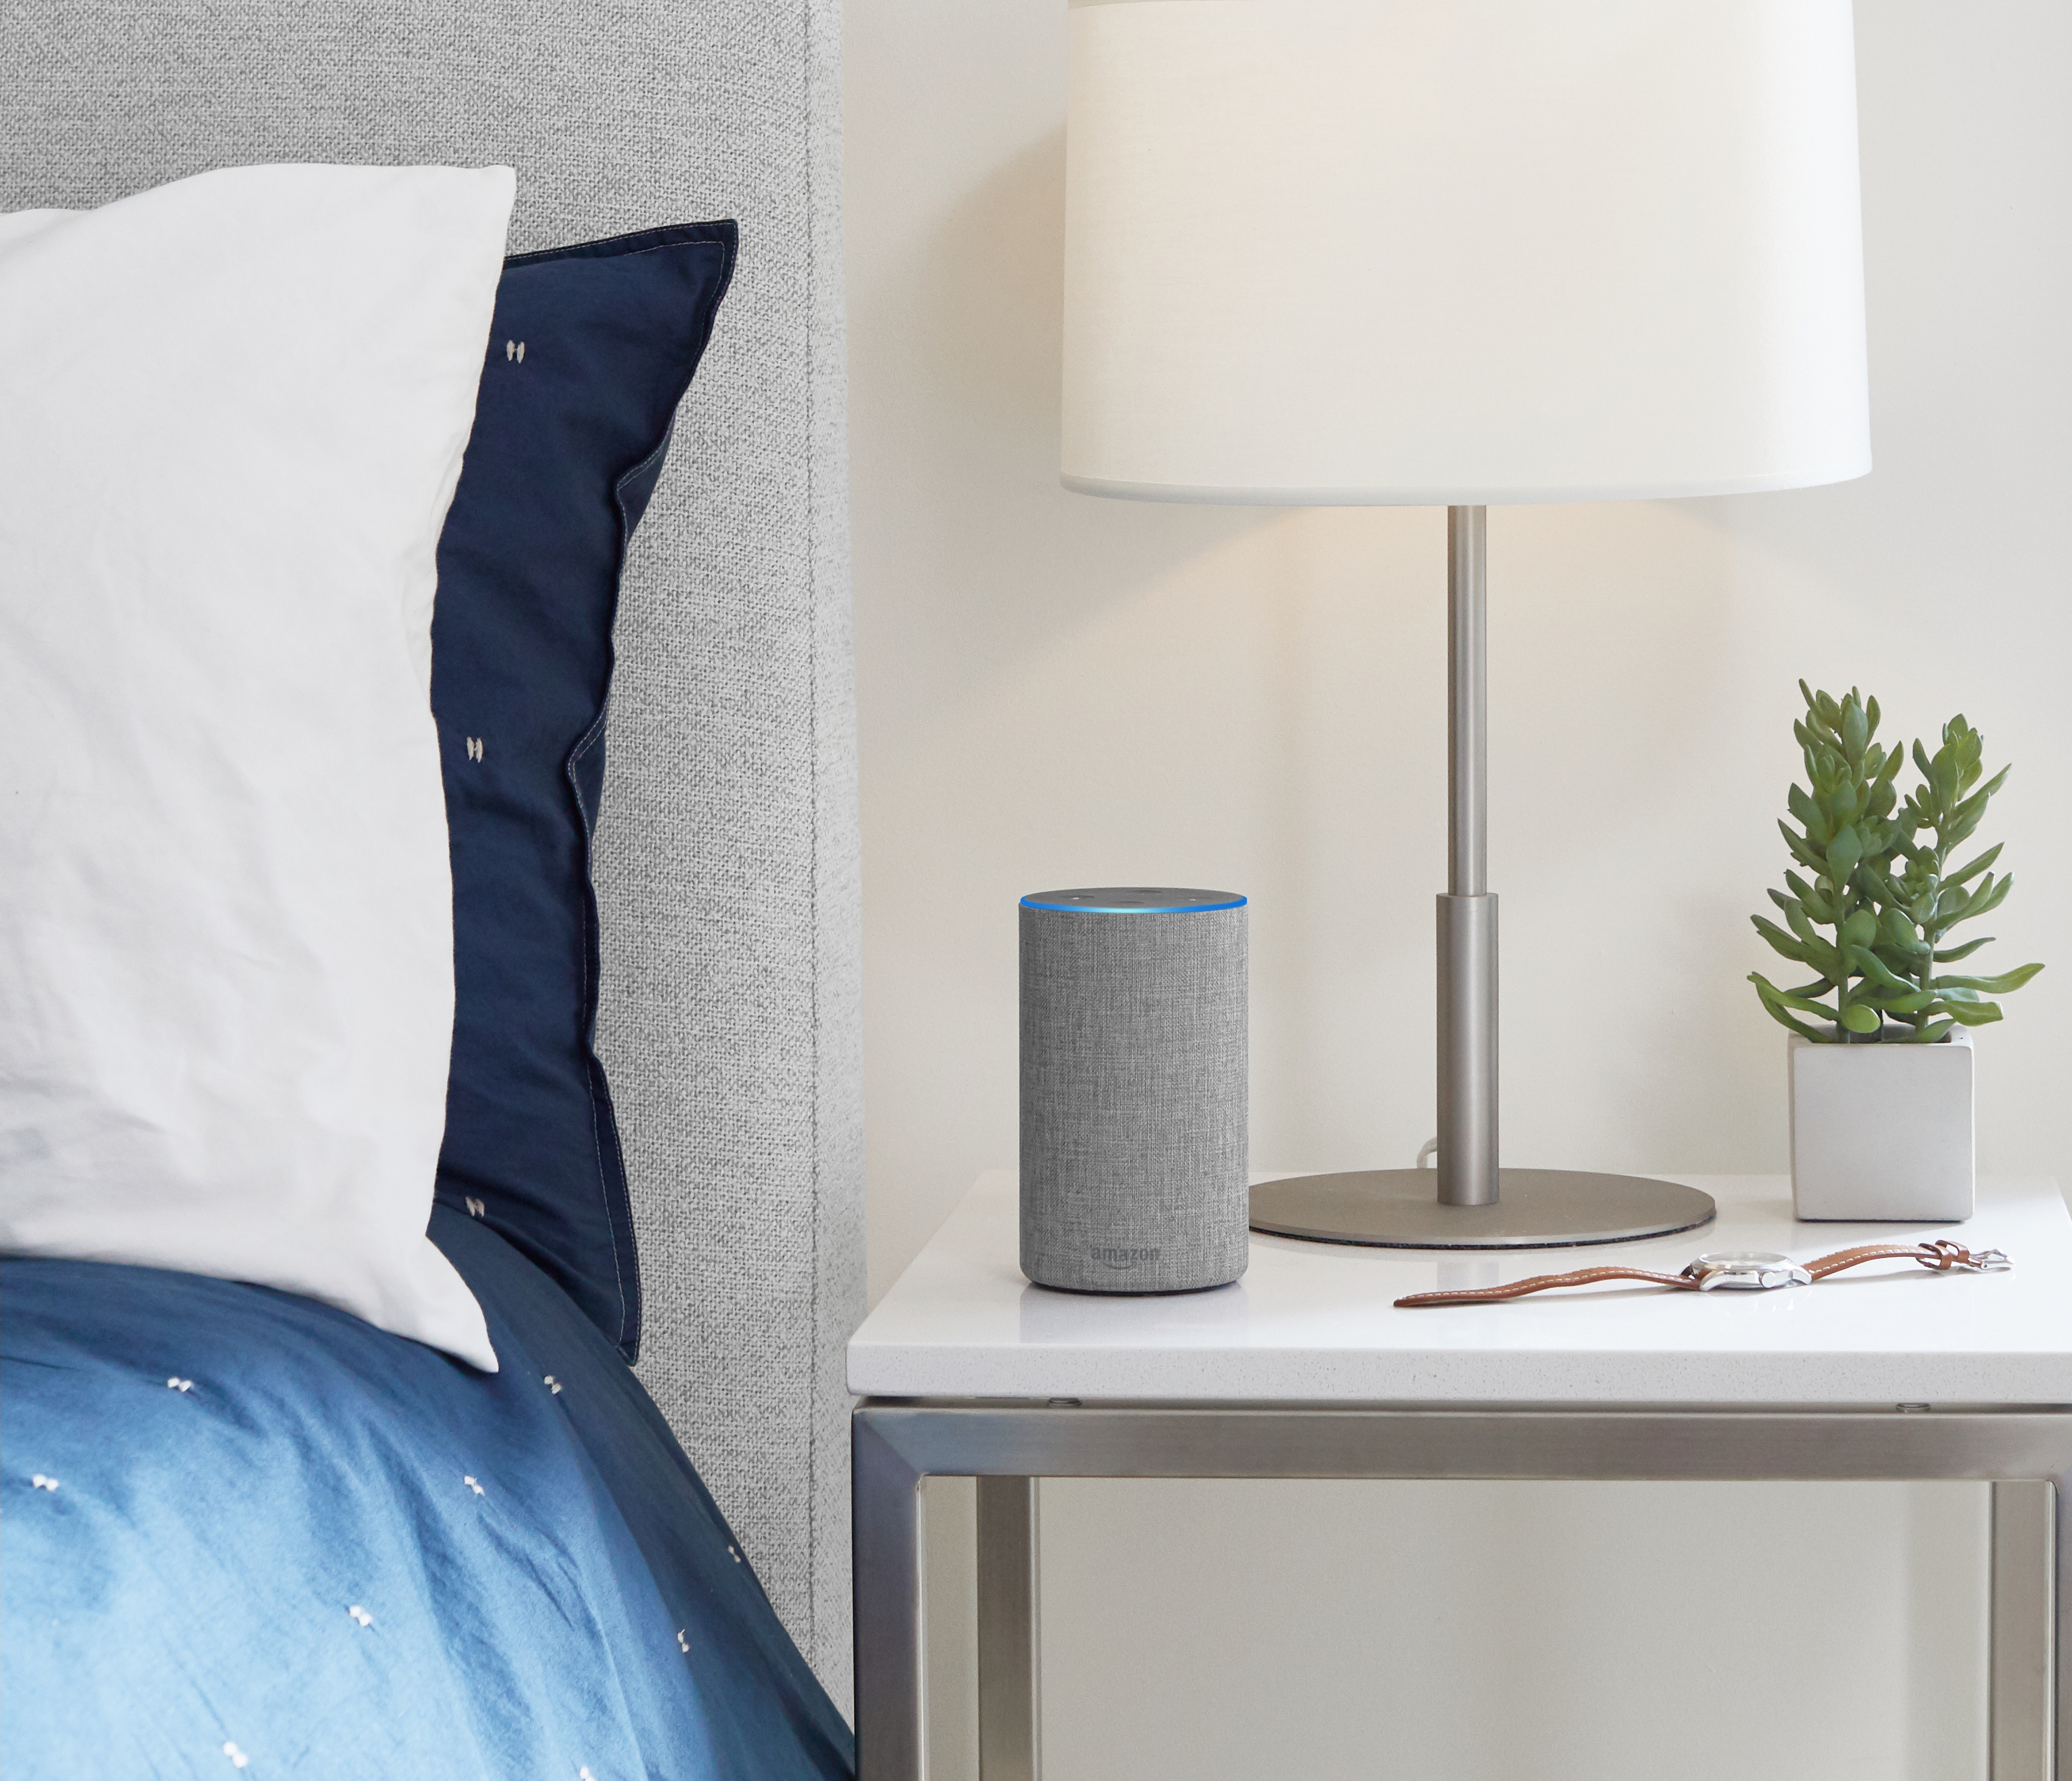 Amazon Echo on nightstand